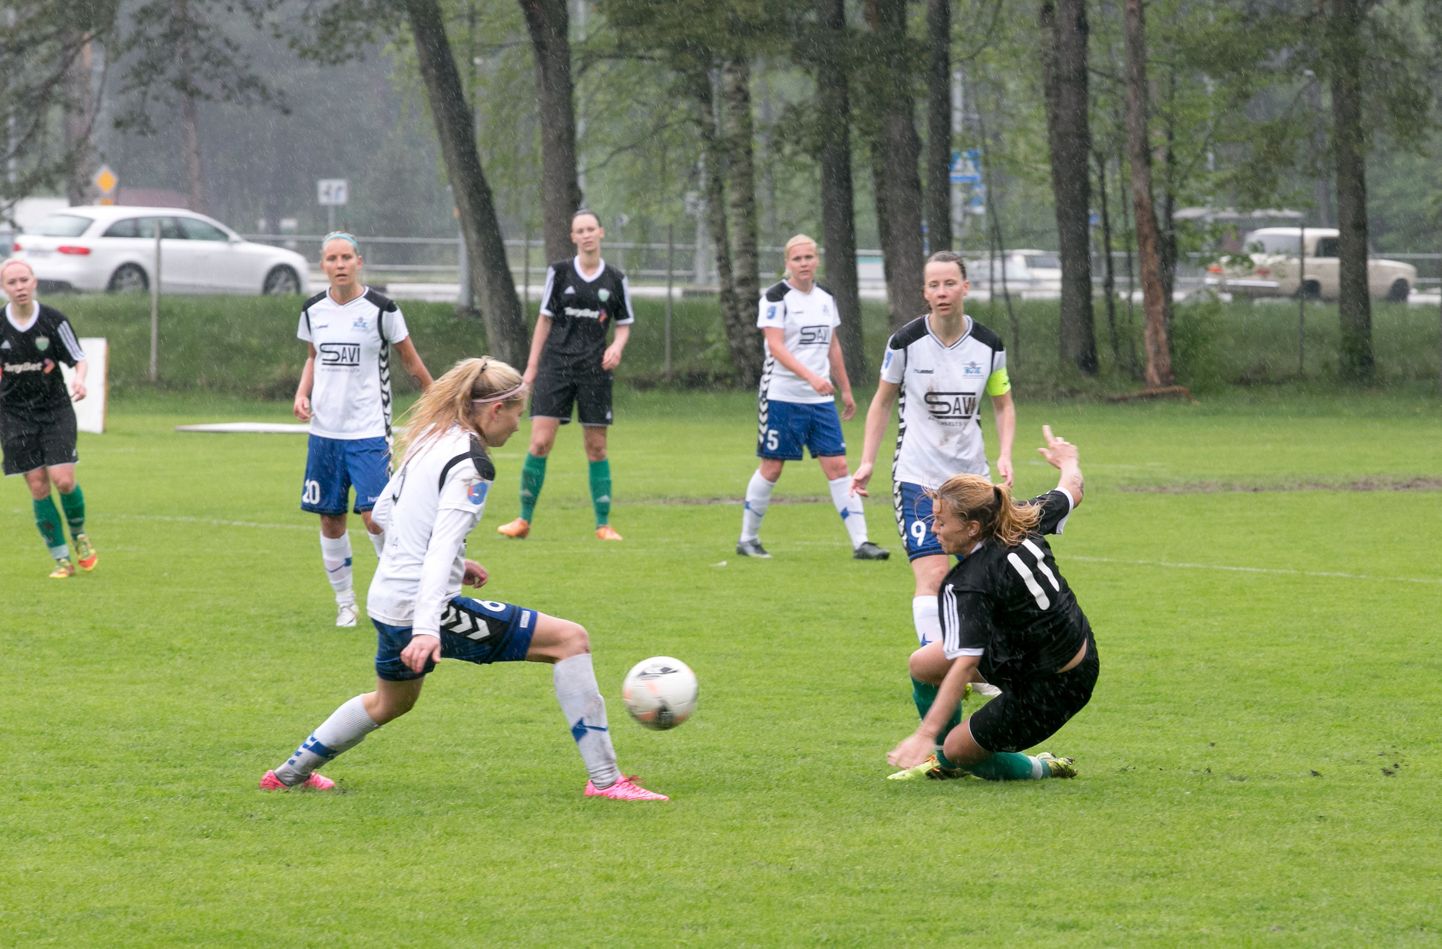 Kodutanumal järjest tiitleid noppiv Pärnu jalgpalliklubi naiskond sai meistrite liiga alagrupiturniiks loosiga tugevad vastased.